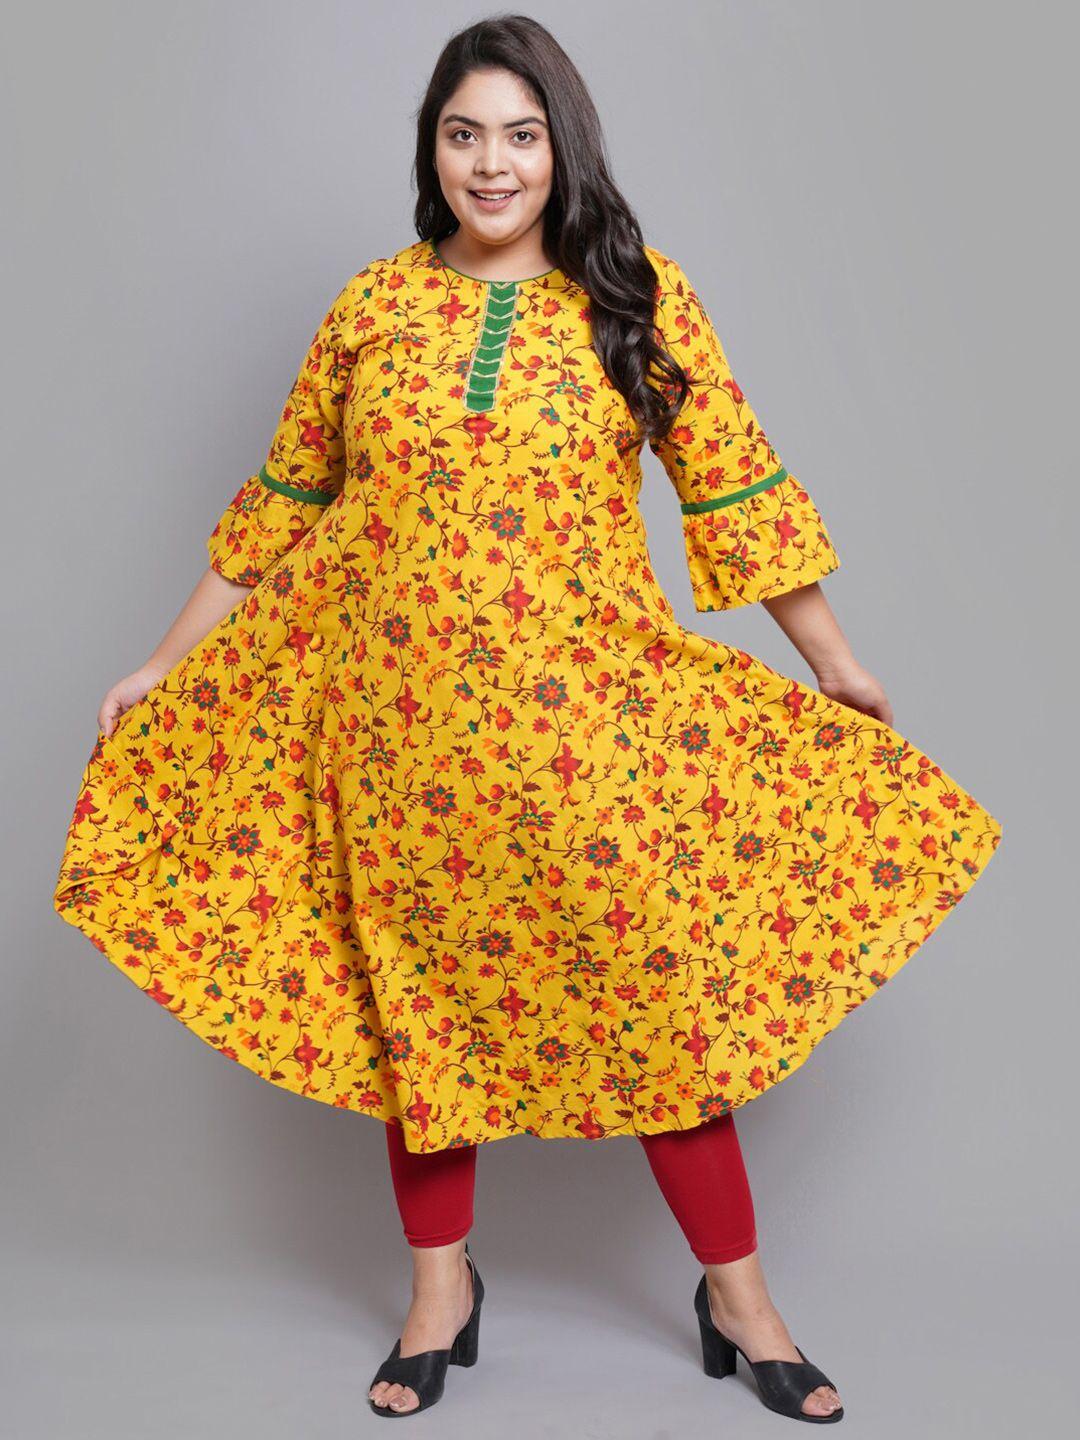 yash gallery women mustard yellow & red floral plus size printed anarkali kurta